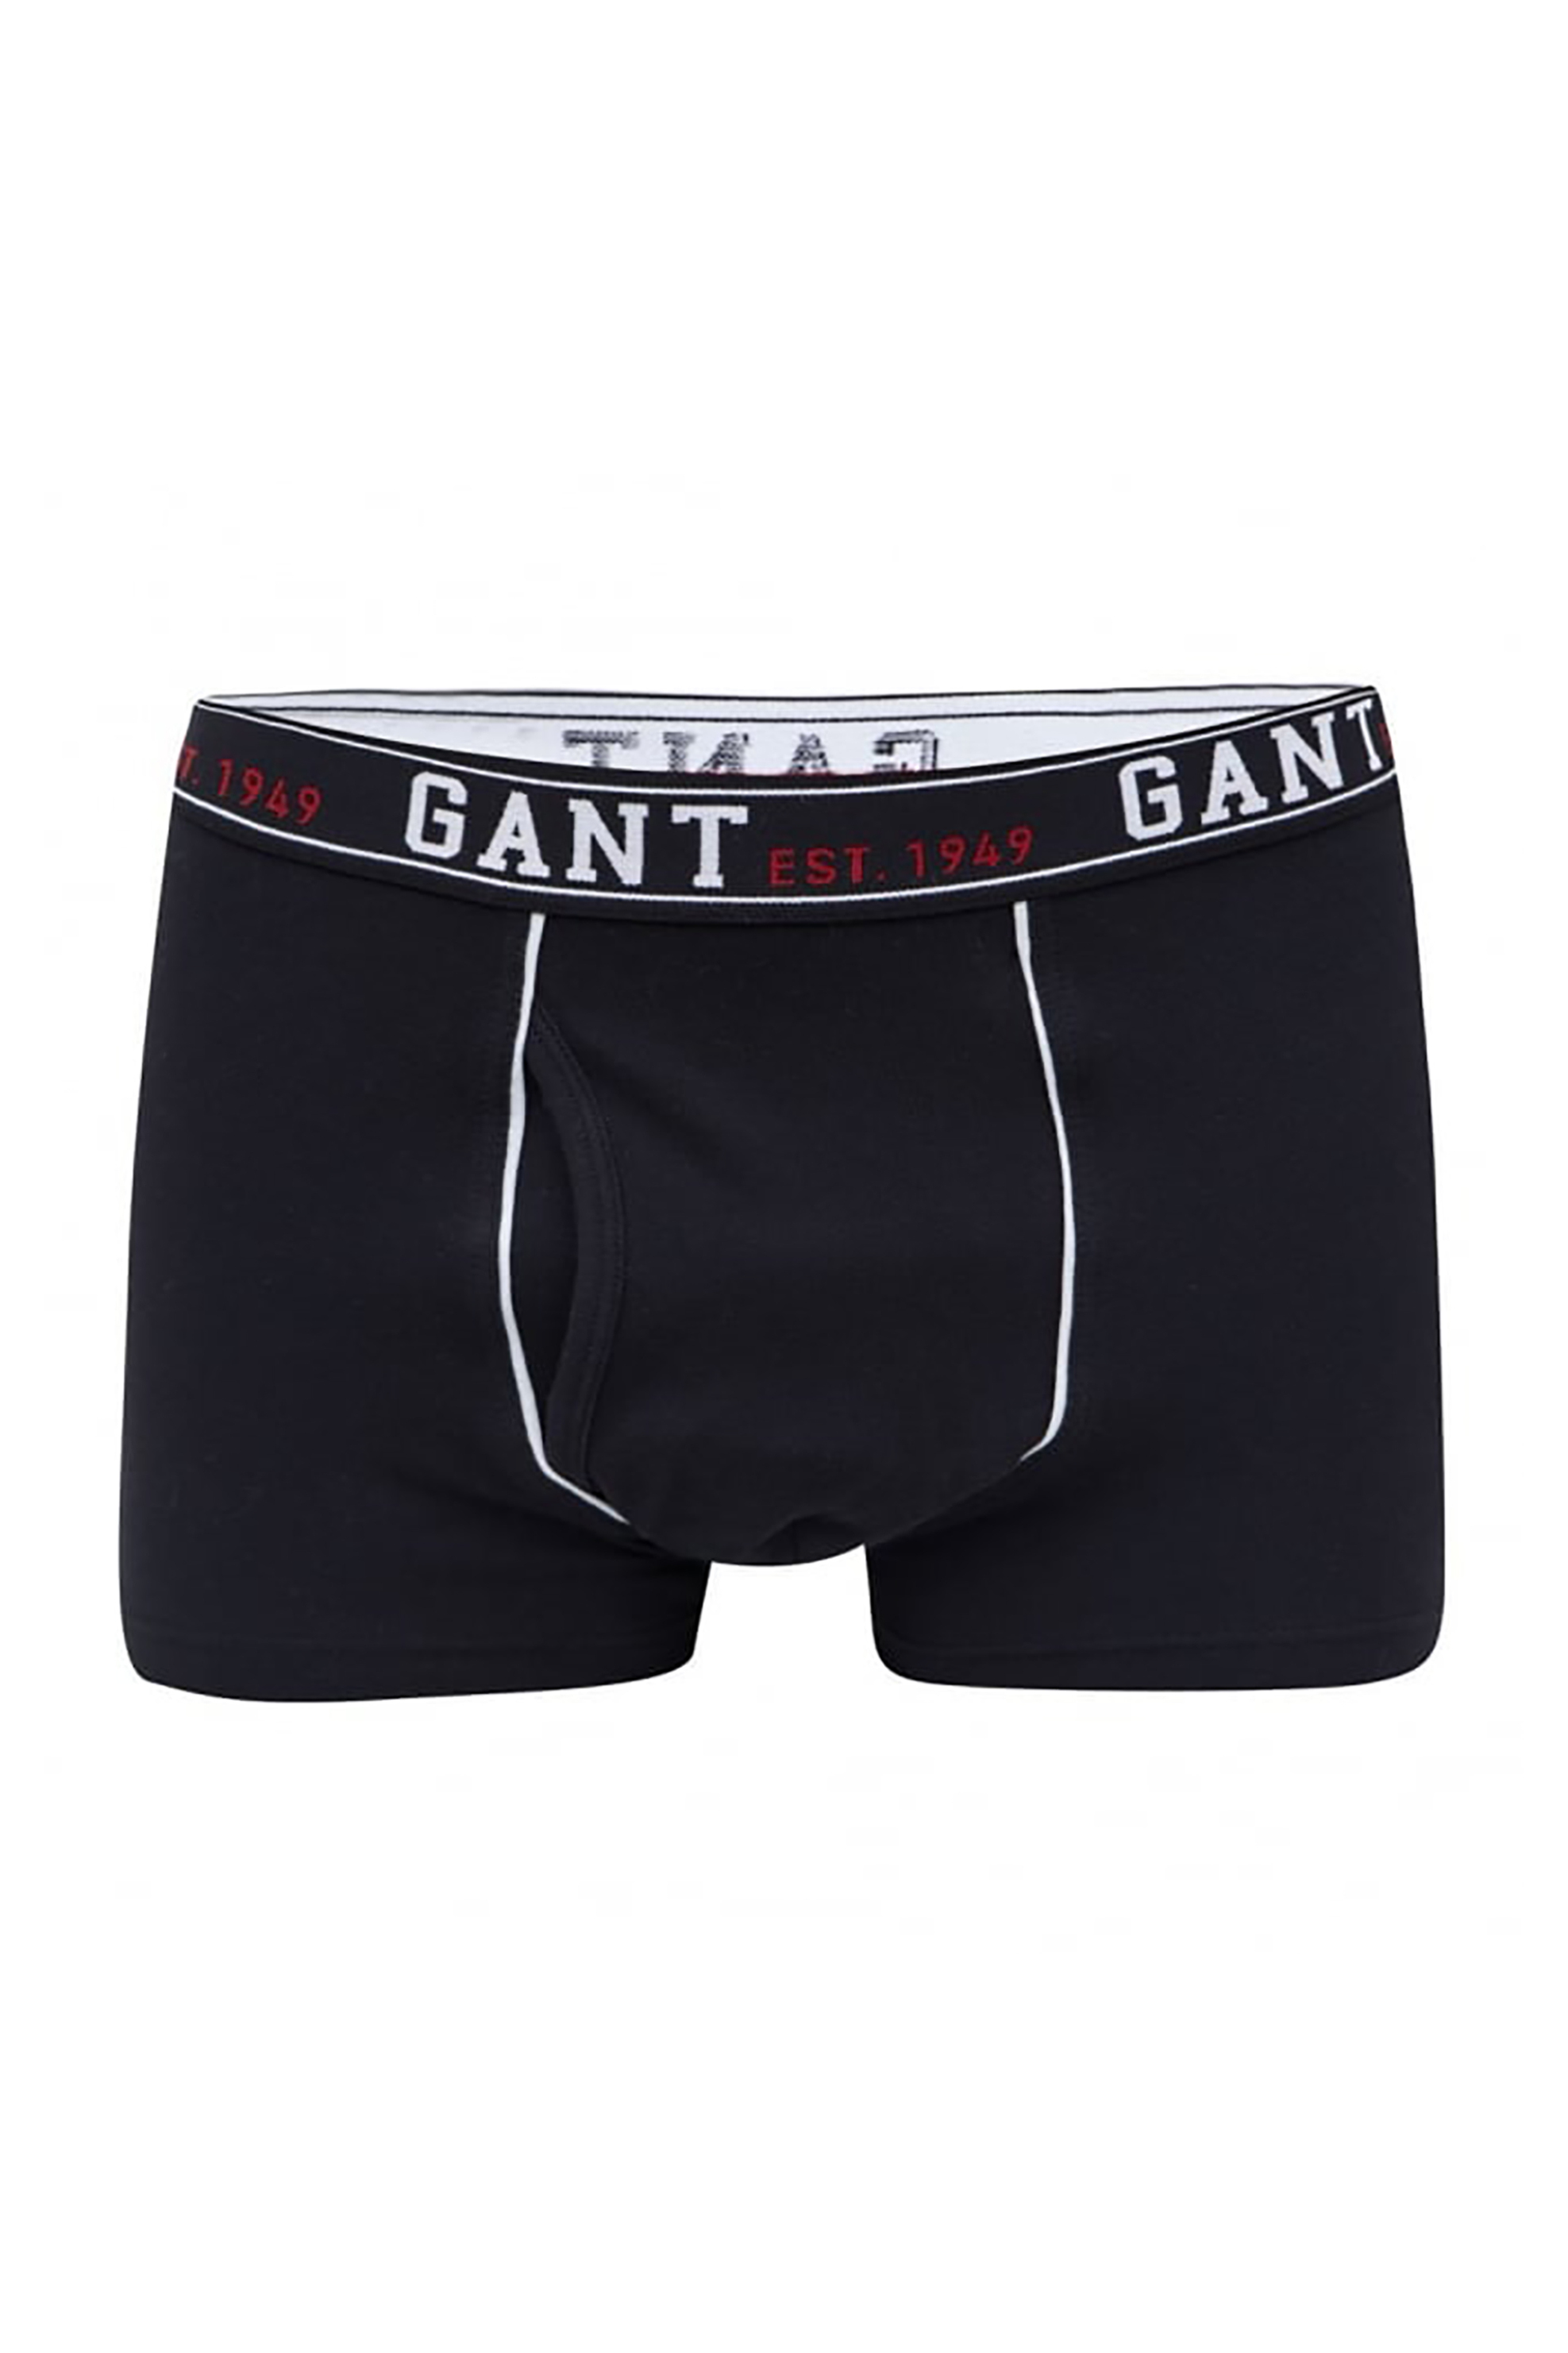 Άνδρας > ΡΟΥΧΑ > Εσώρουχα > Boxer Shorts Gant ανδρικό μποξεράκι - 1333 Μαύρο